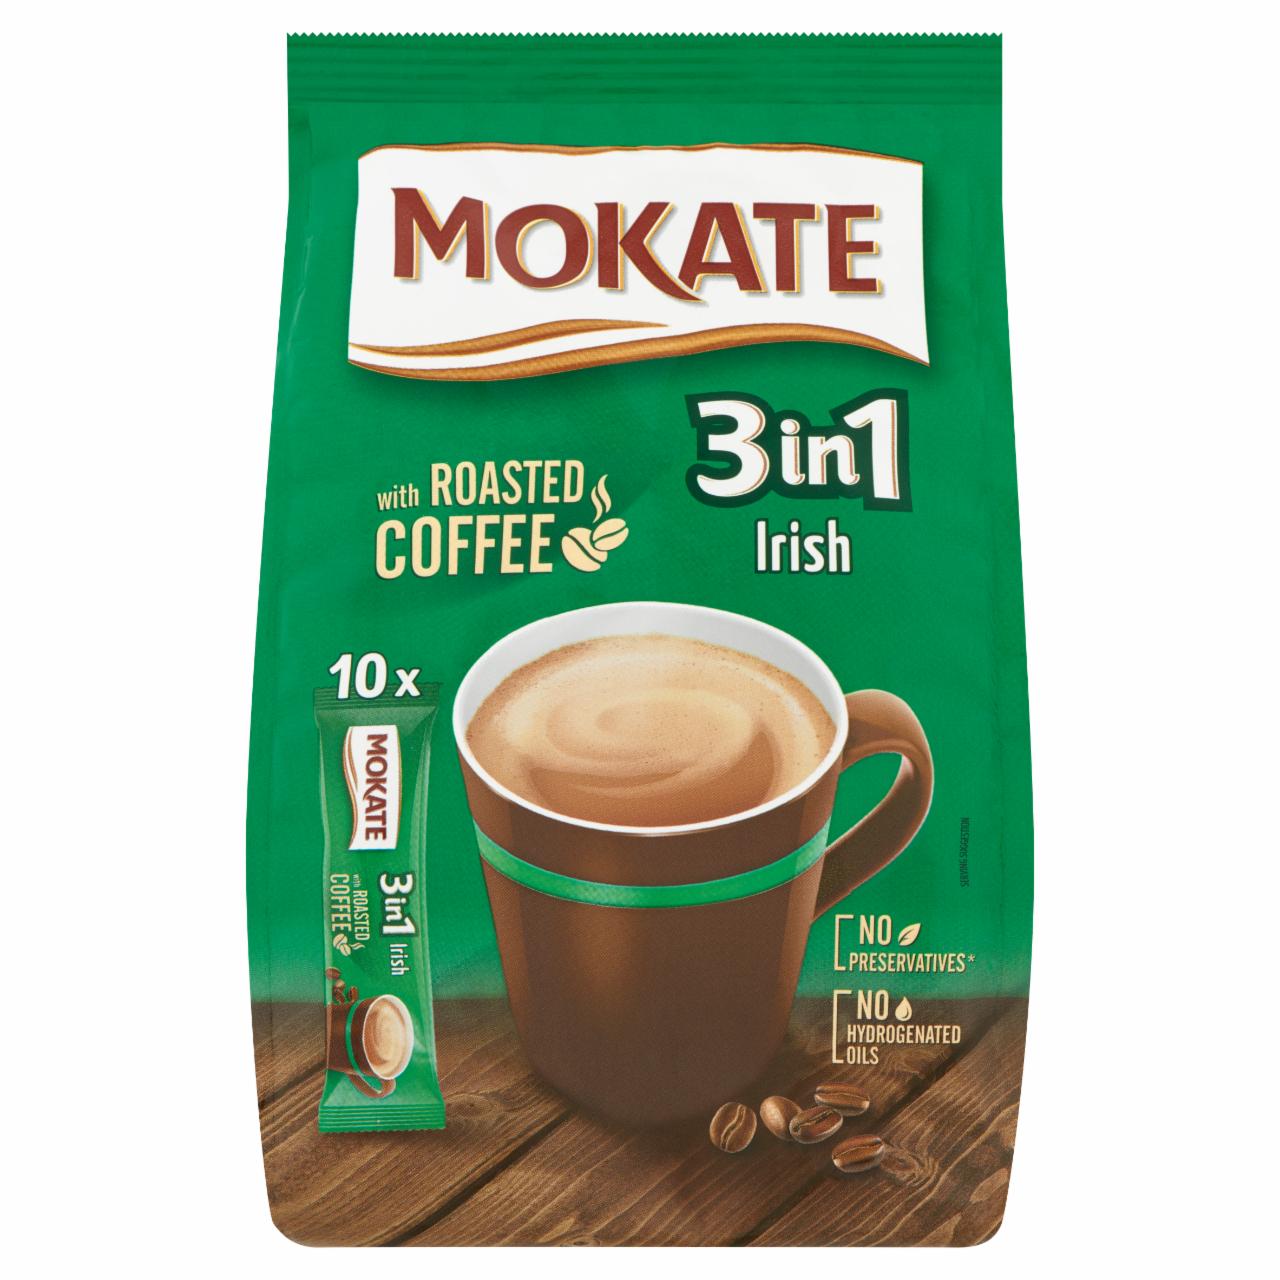 Képek - Mokate 3in1 azonnal oldódó kávéspecialitás Irish Cream likőr ízesítéssel 10 db 170 g